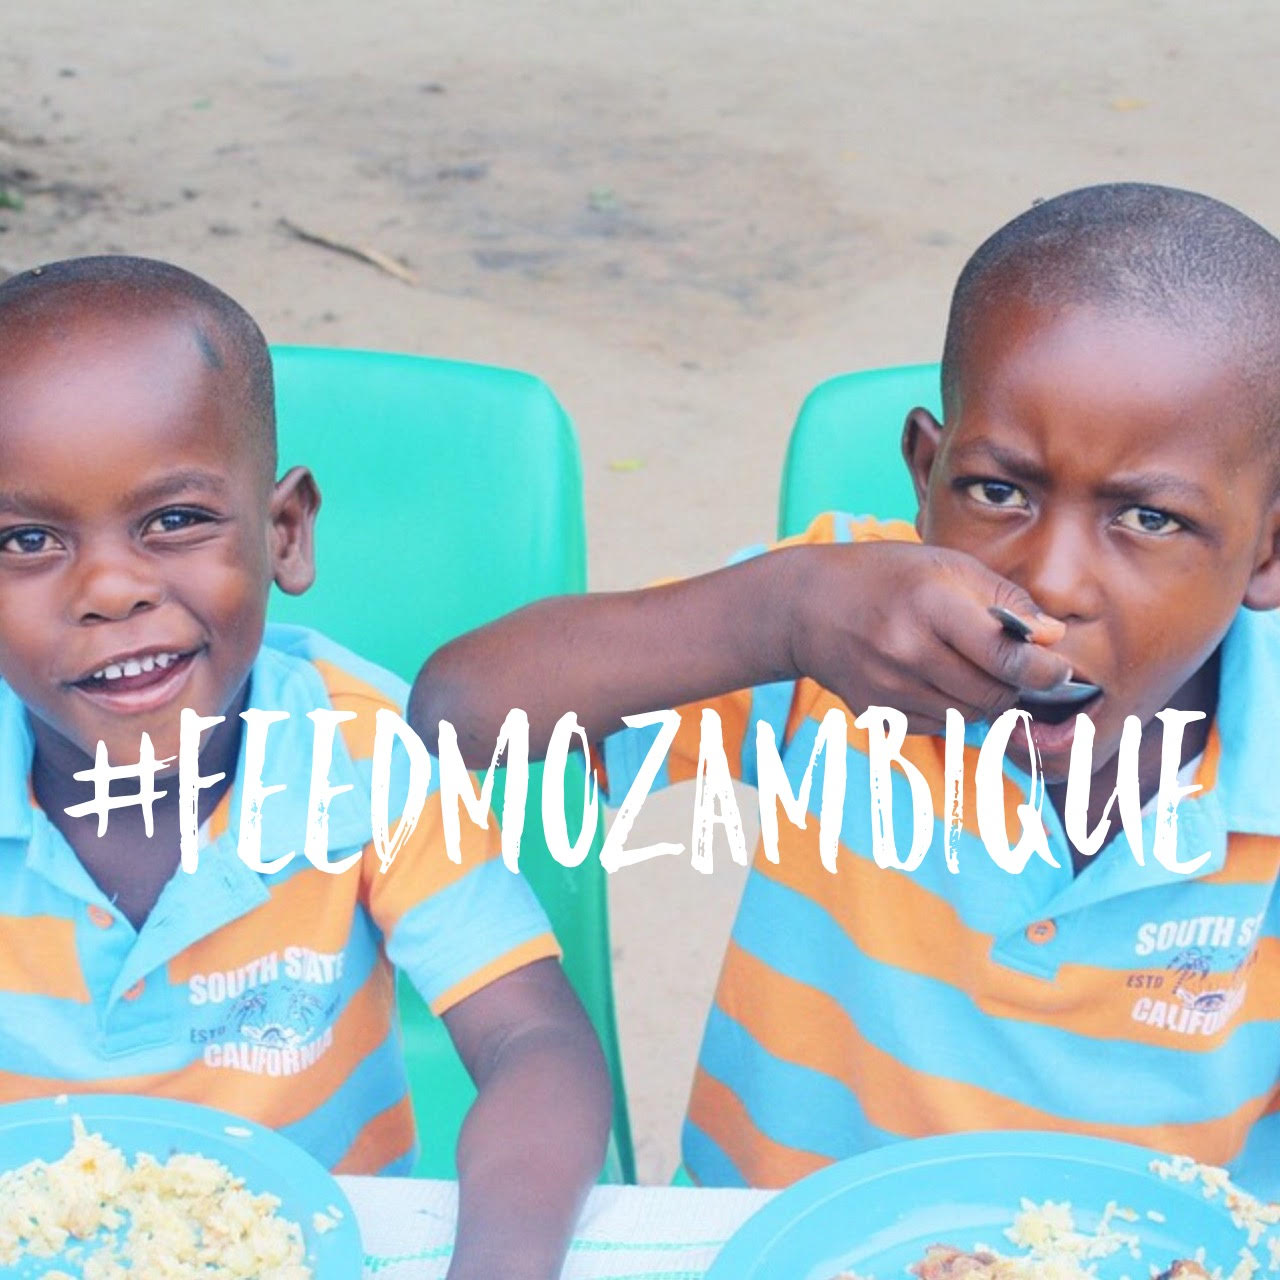 #feedmozambique